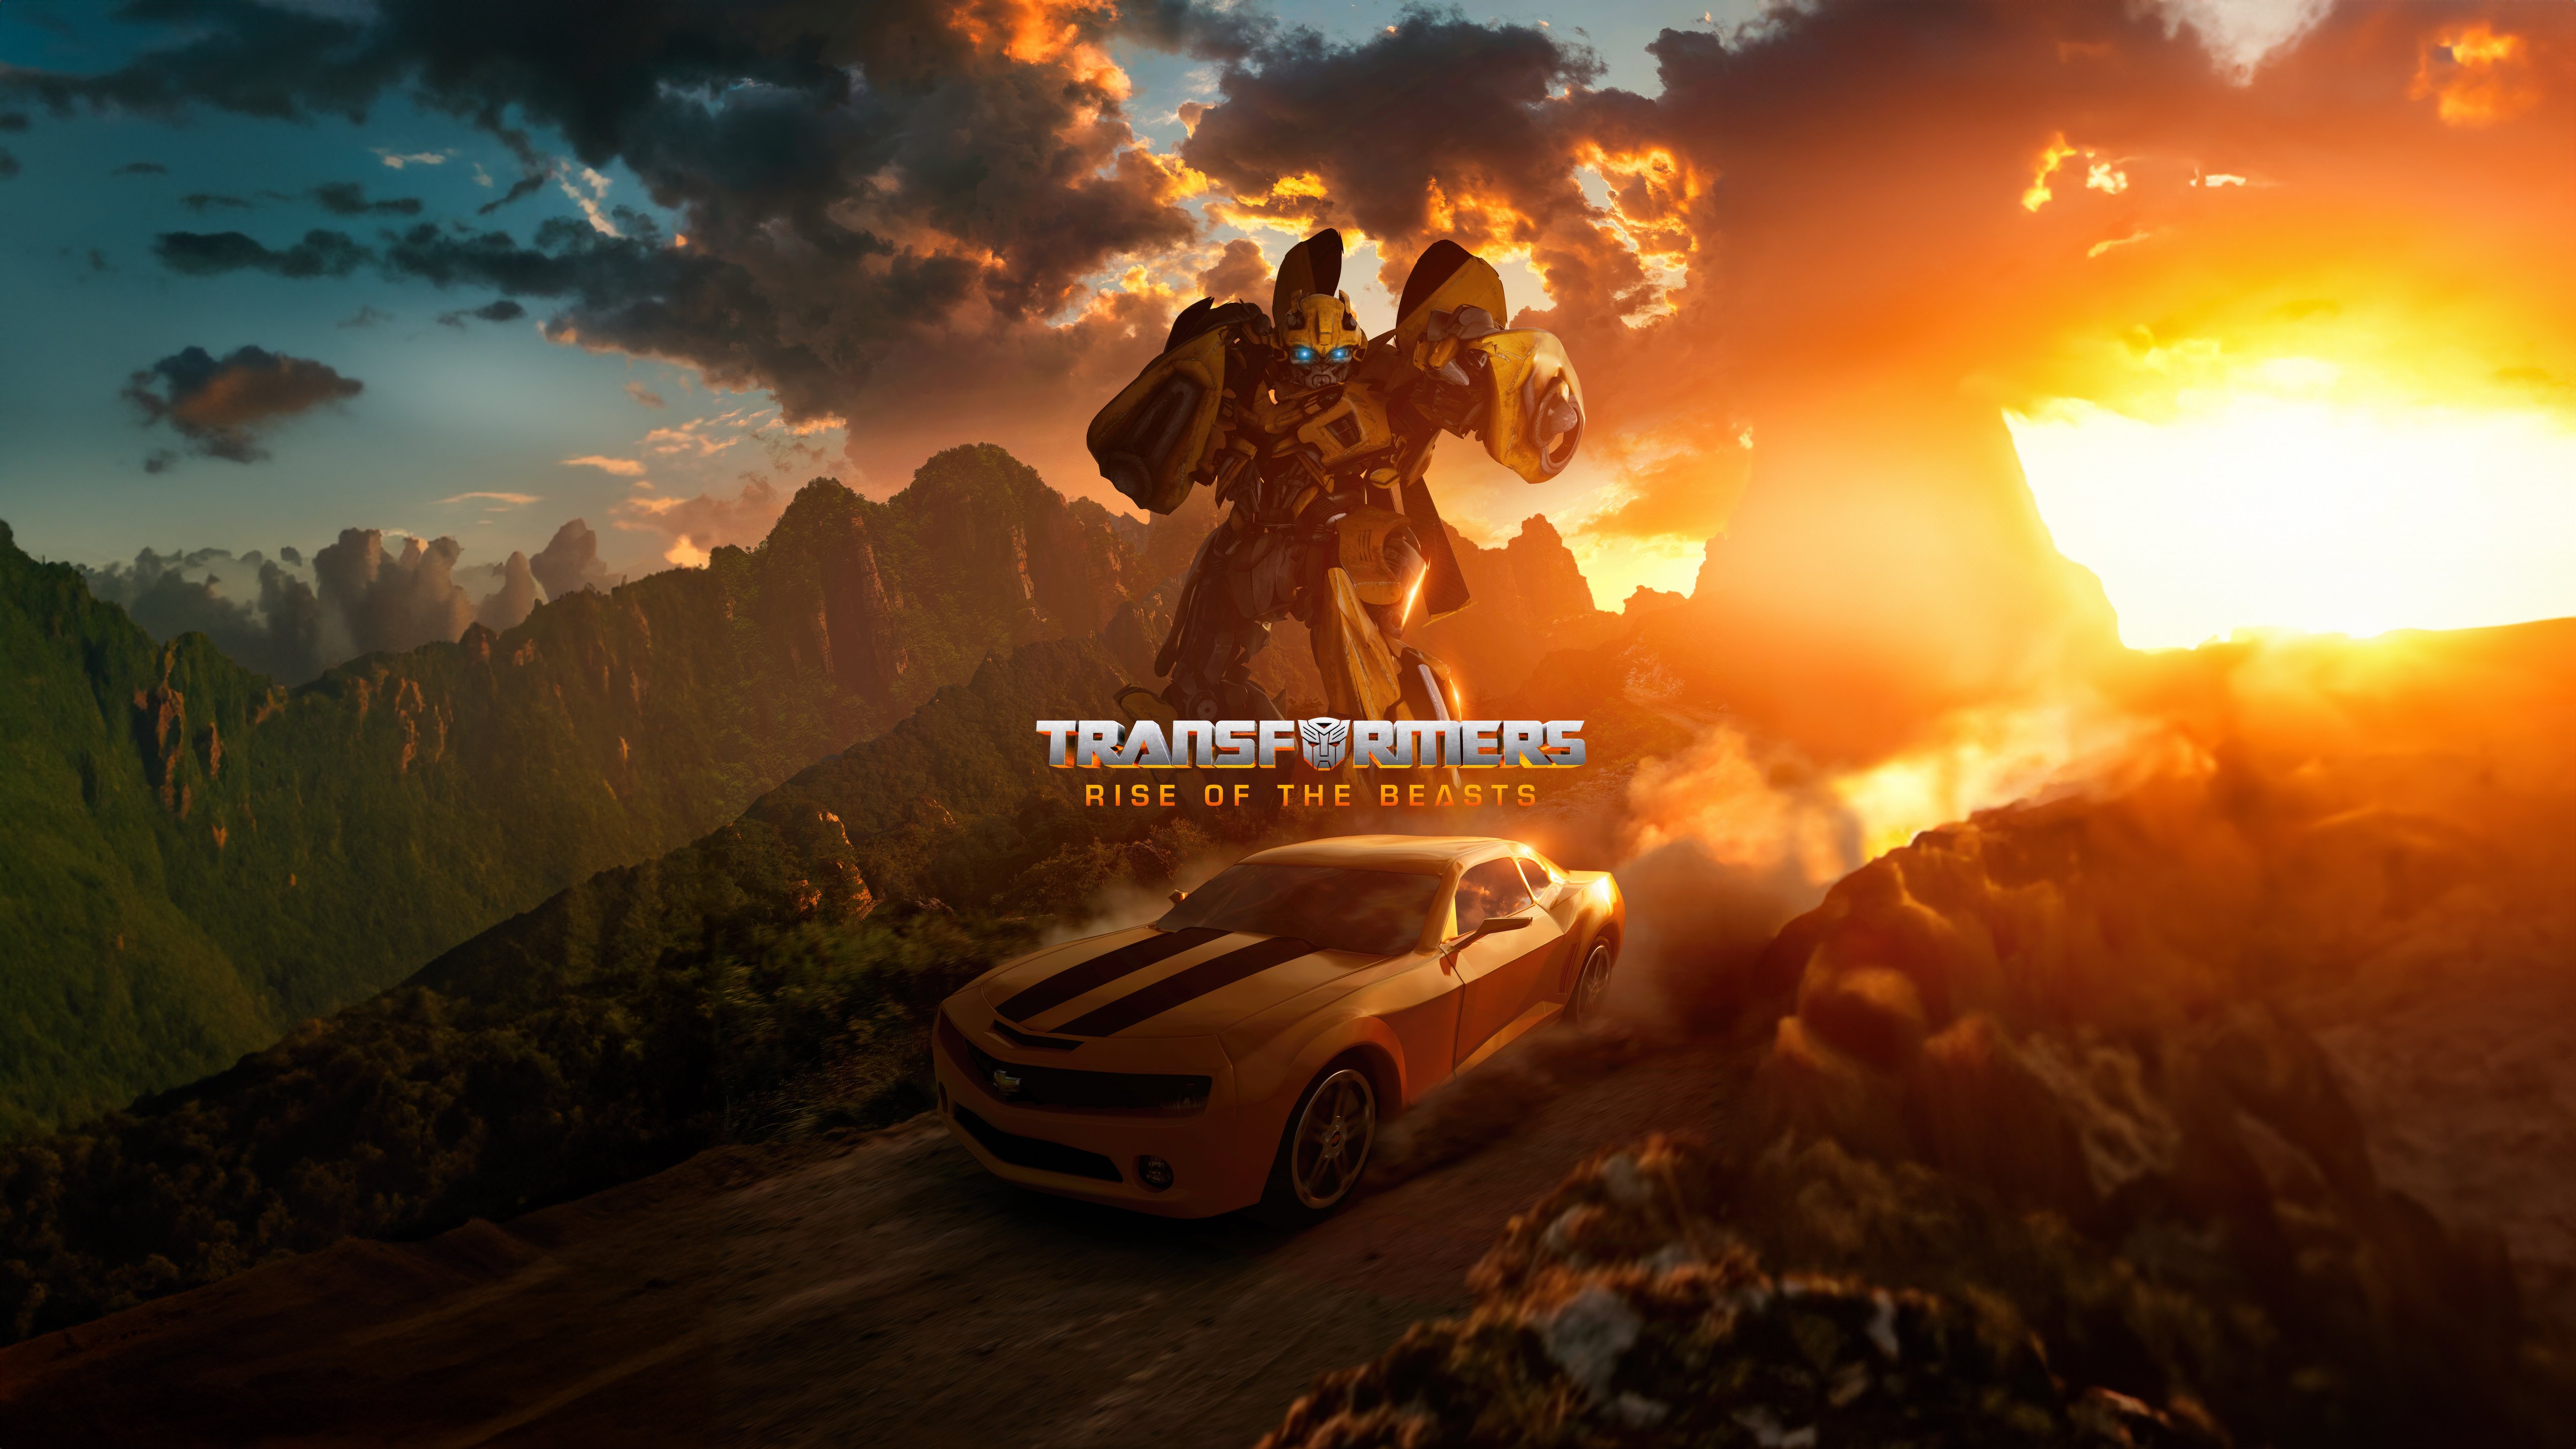 Fondos de pantalla Transformers El Despertar de las Bestias